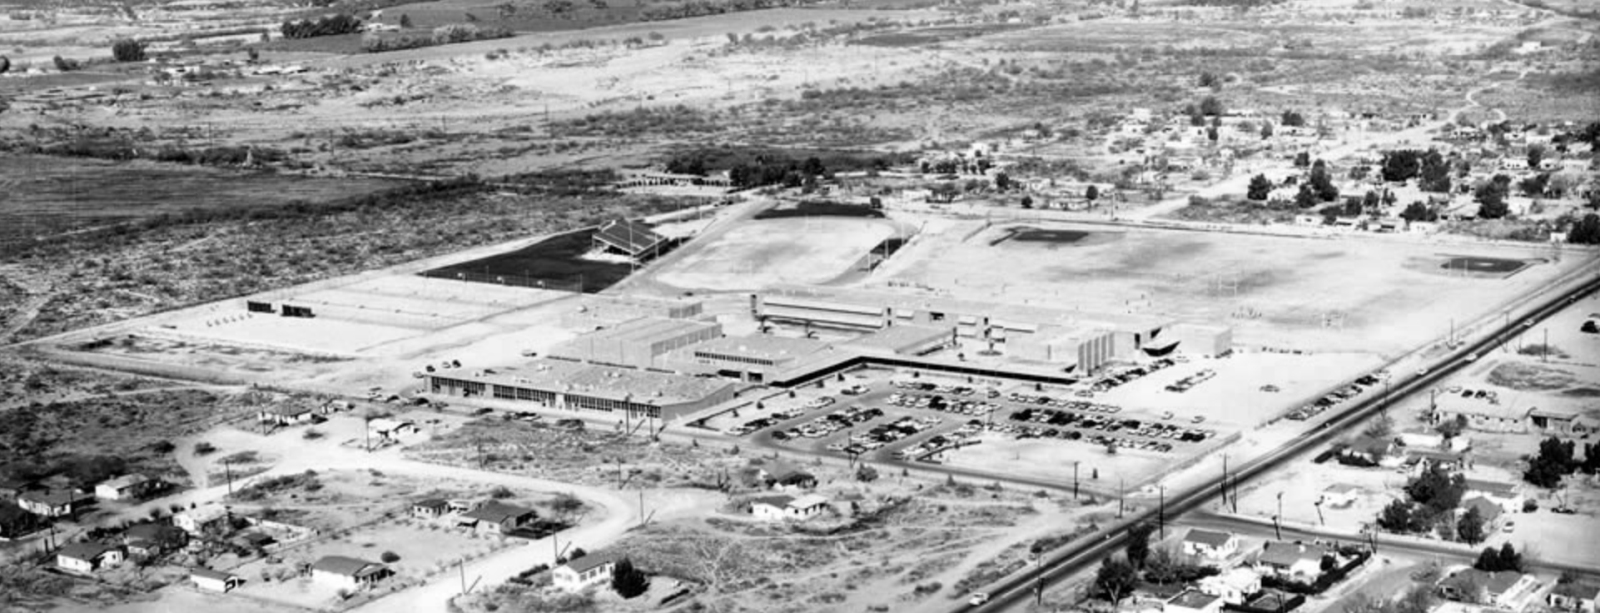 Pueblo High School in 1956